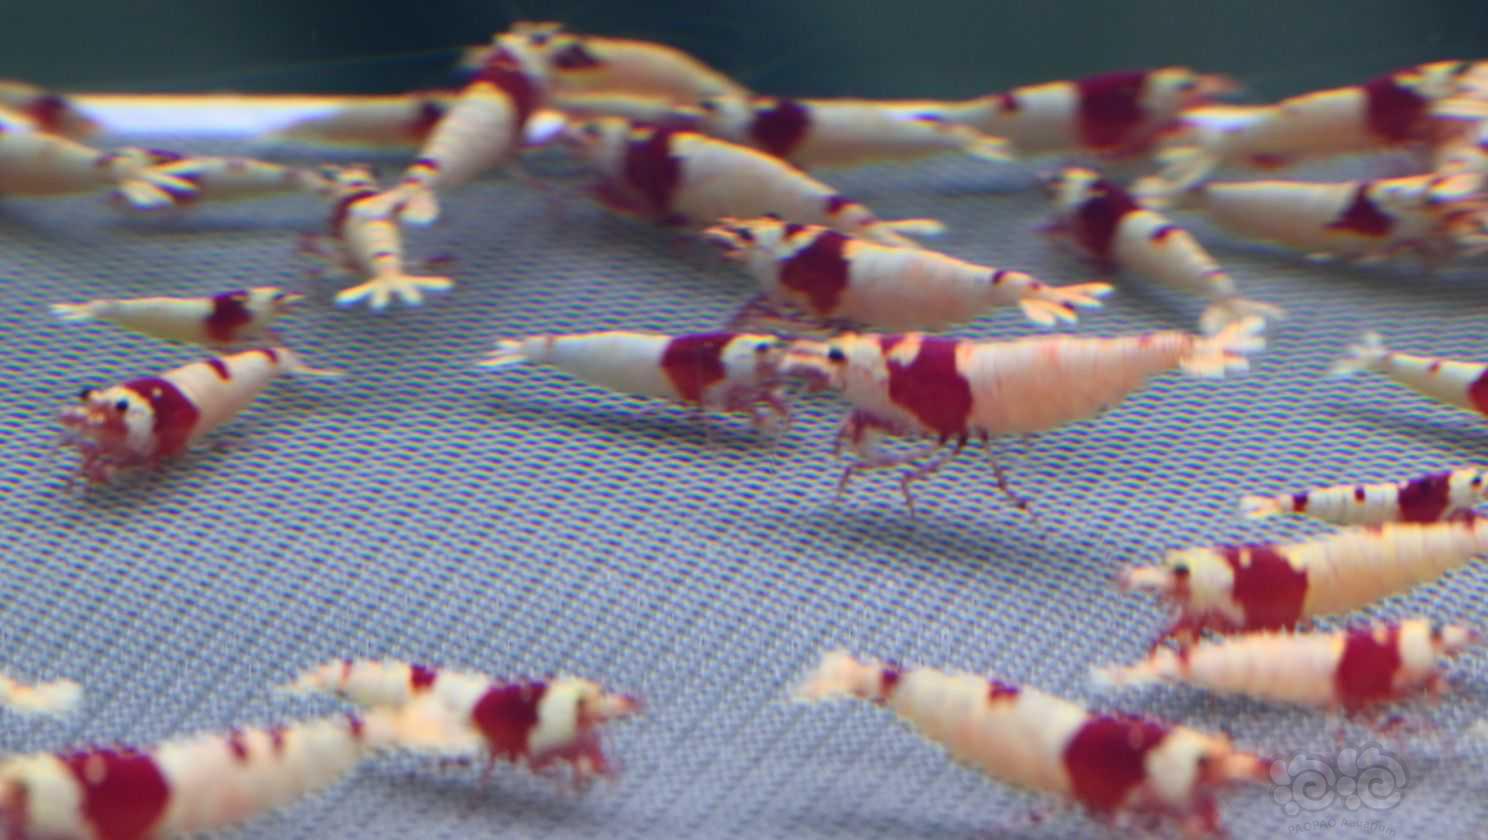 【水晶虾】出一组红白-图5